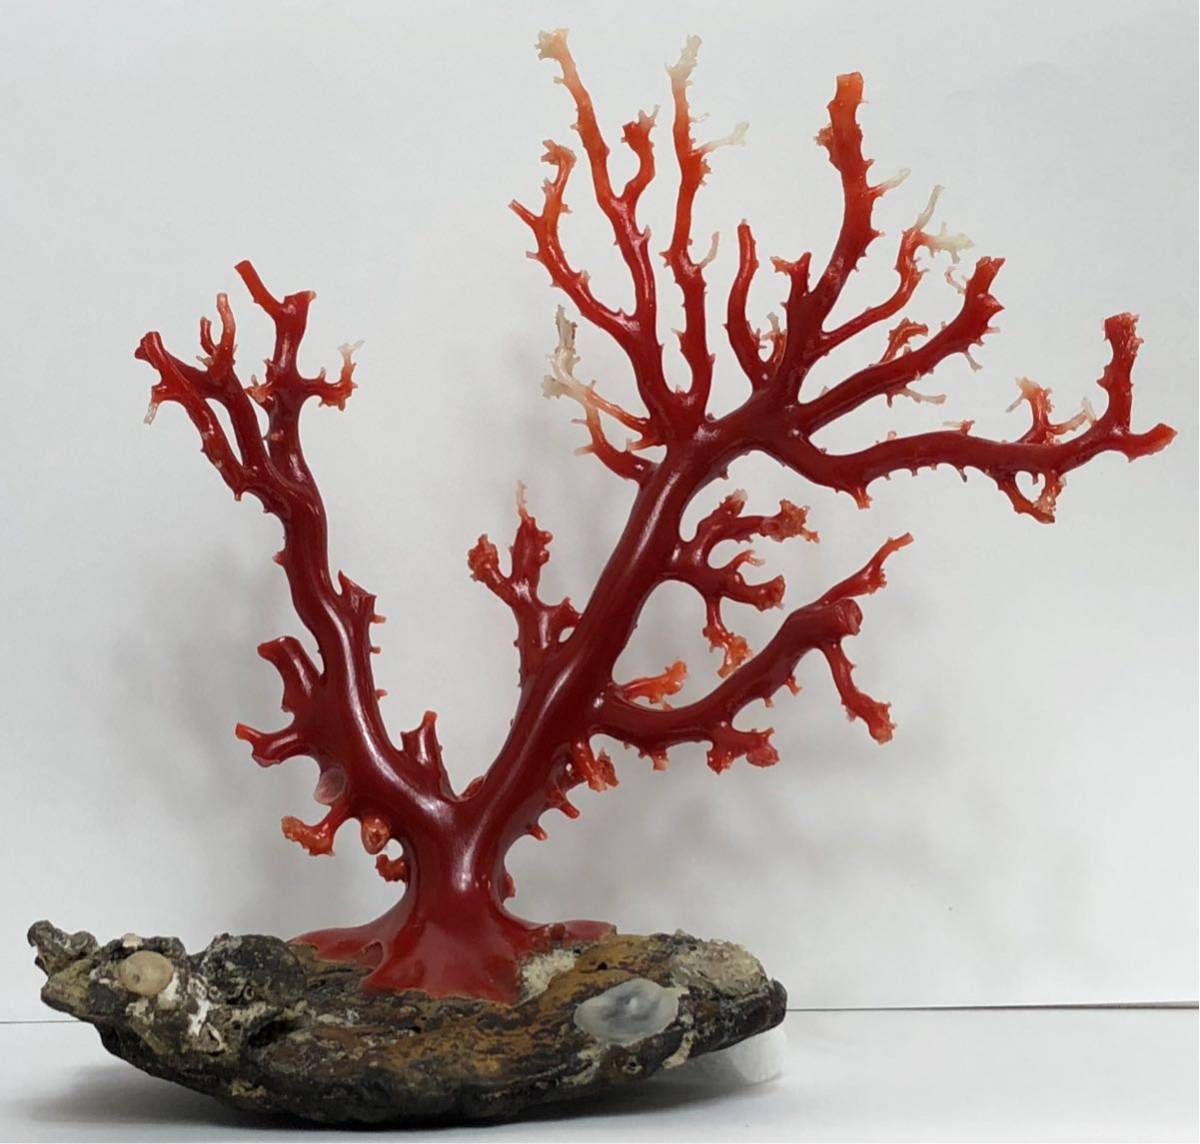 血赤珊瑚 日本産血赤珊瑚 ベスト血赤珊瑚原木 拝見 238g 枝サンゴ 血赤サンゴ コーラル 本珊瑚保証(コーラル、サンゴ)｜売買された